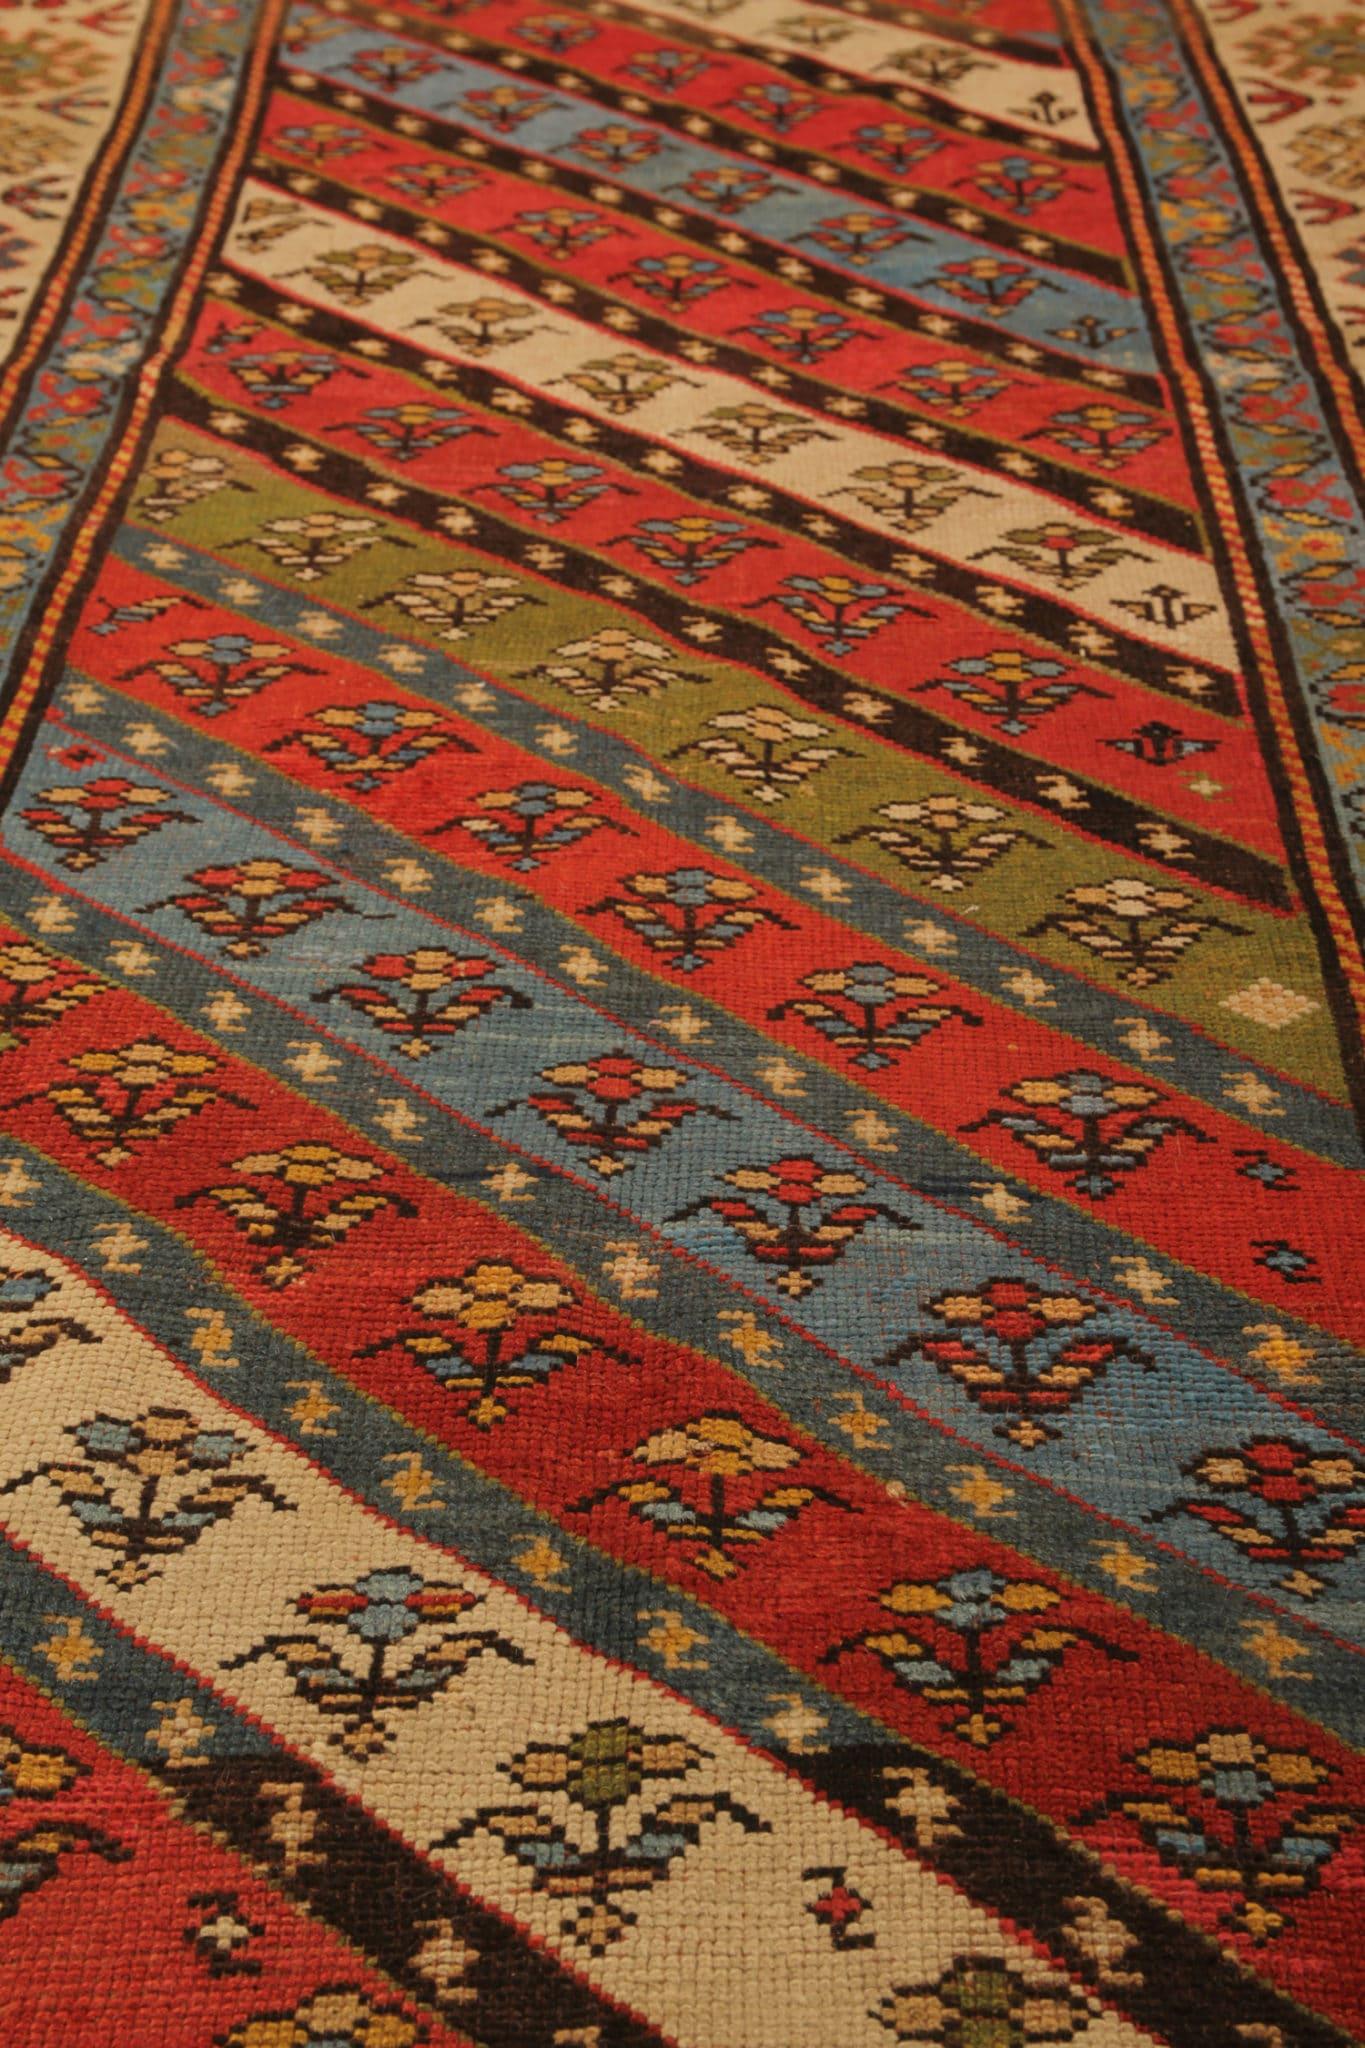 Tauchen Sie ein in die Geschichte mit unserem seltenen antiken Teppich, einem fesselnden Stück Handwerkskunst aus der Kaukasusregion. Dieses orientalische Meisterwerk, das in den 1880er Jahren mit großer Sorgfalt handgeknüpft wurde, befindet sich in